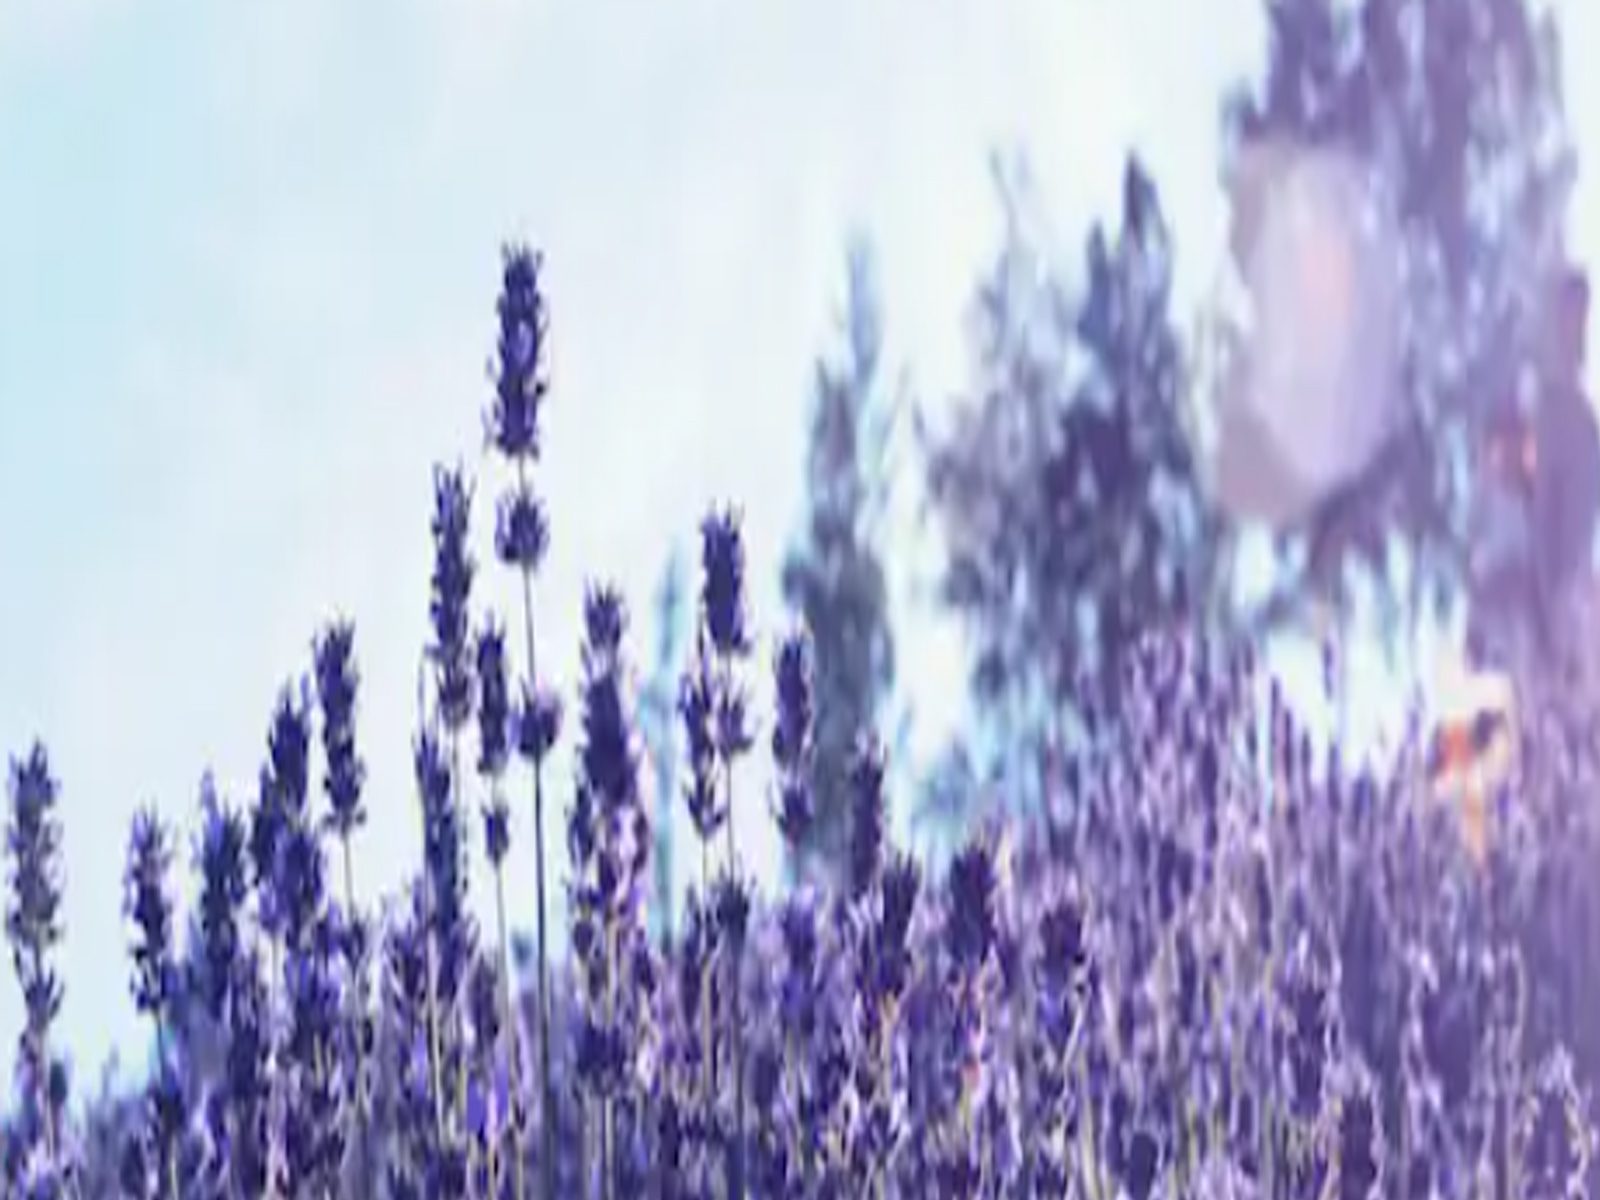 Benefits of Lavender: ਜਾਣੋ ਲੈਵੈਂਡਰ ਕਿਵੇਂ ਕਰਦਾ ਹੈ ਚਿੰਤਾ ਅਤੇ ਤਣਾਅ ਨੂੰ ਦੂਰ